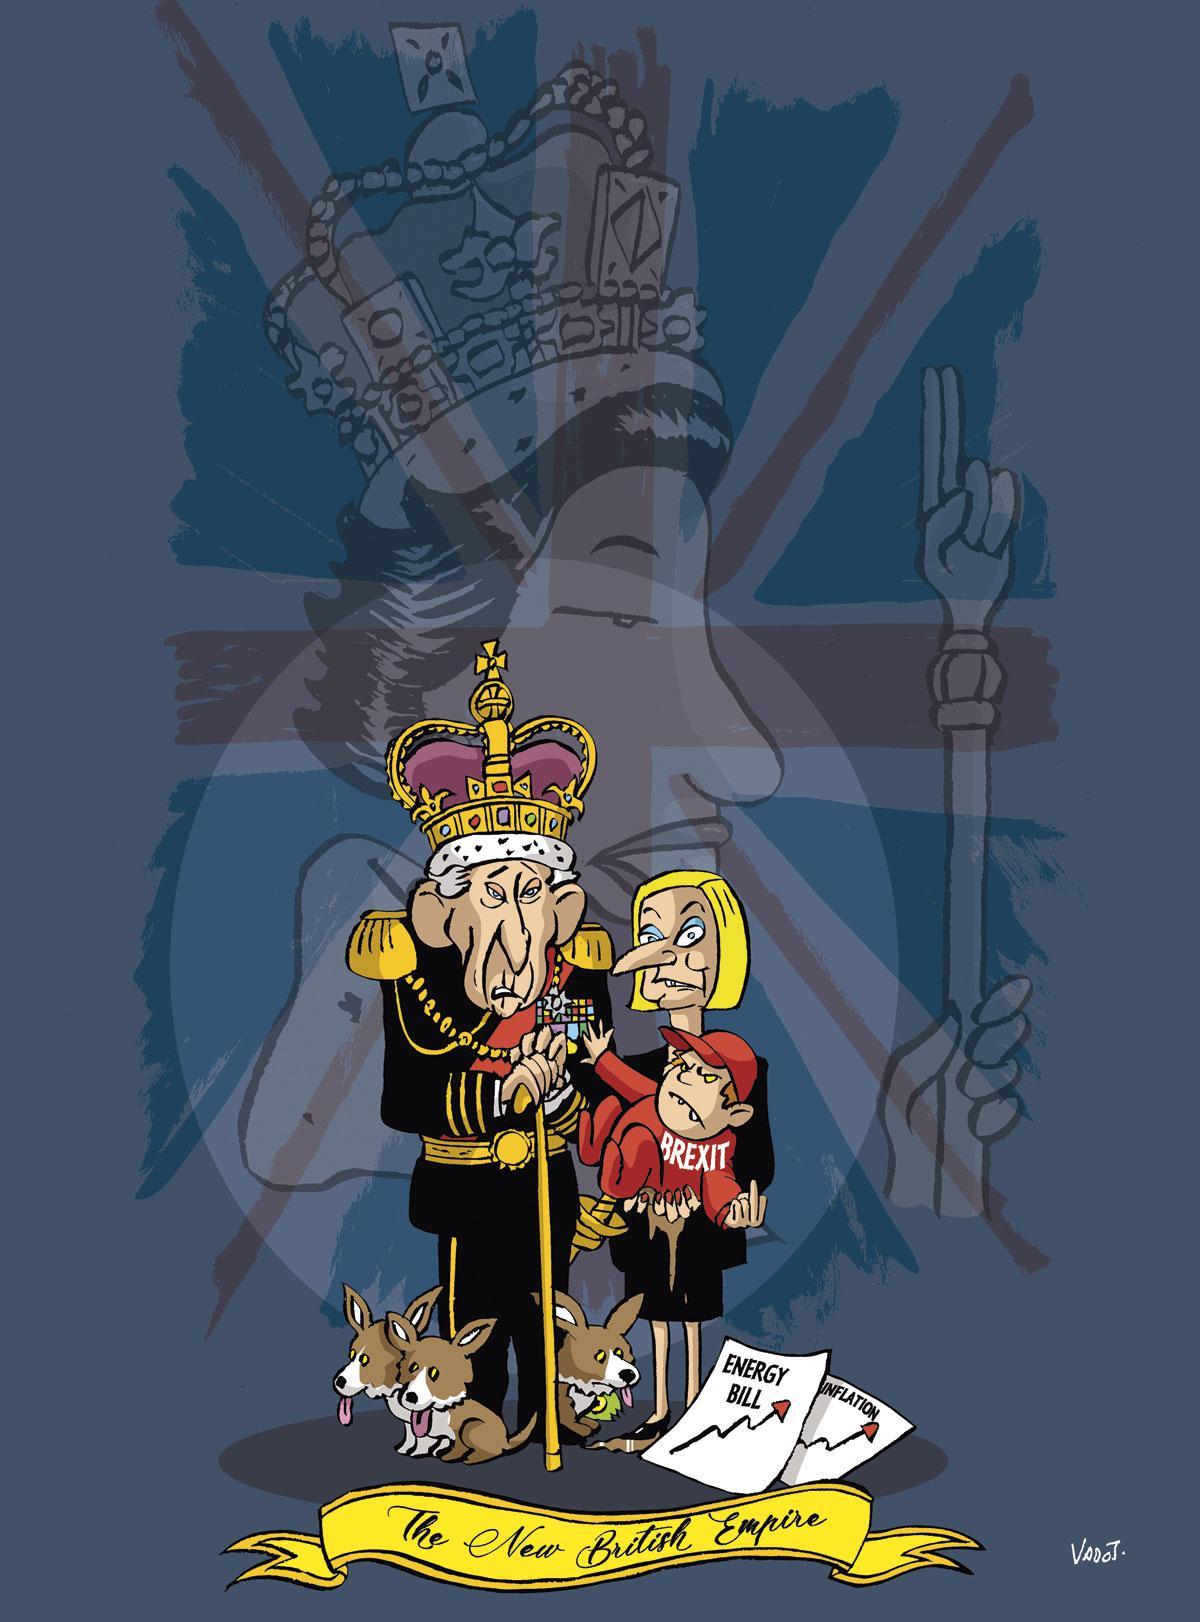 INTERNATIONAL - 15 septembreDécès de la reine Elizabeth II. Liz Truss, elle, fait un passage éphémère à la tête du Royaume-Uni.